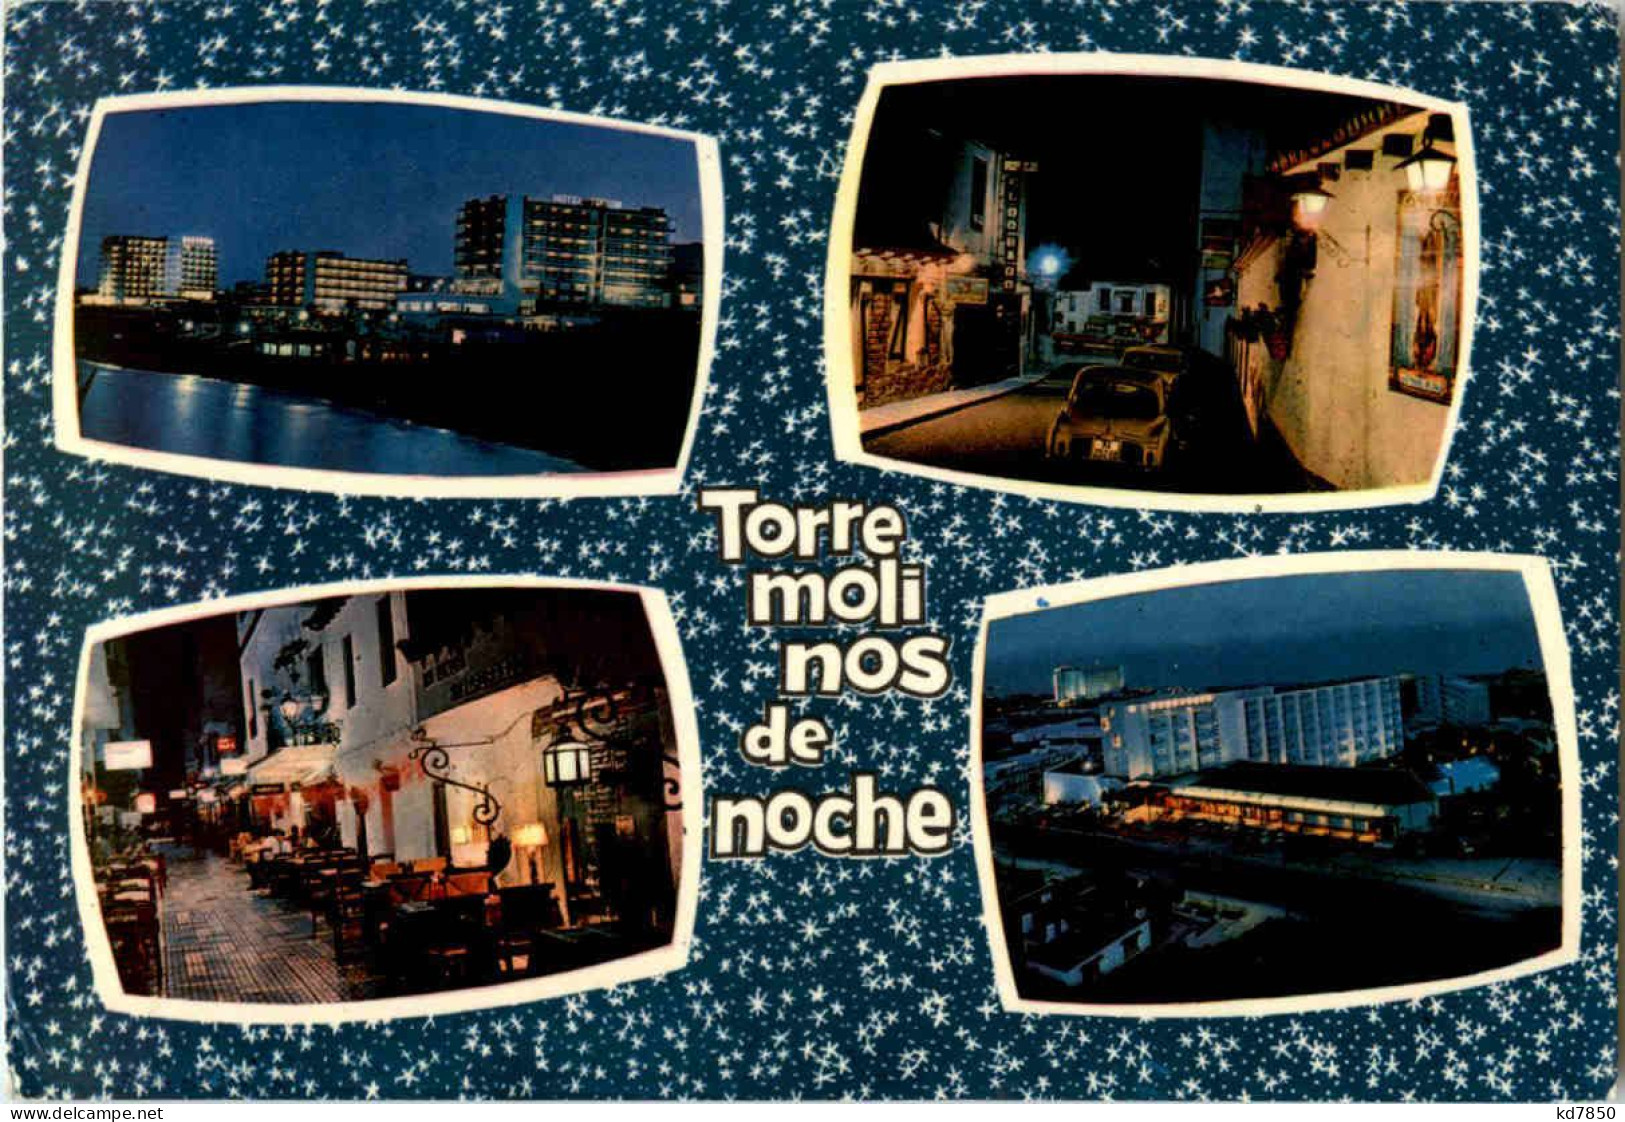 Torremolinos - Torre Moli Nos De Noche - Malaga